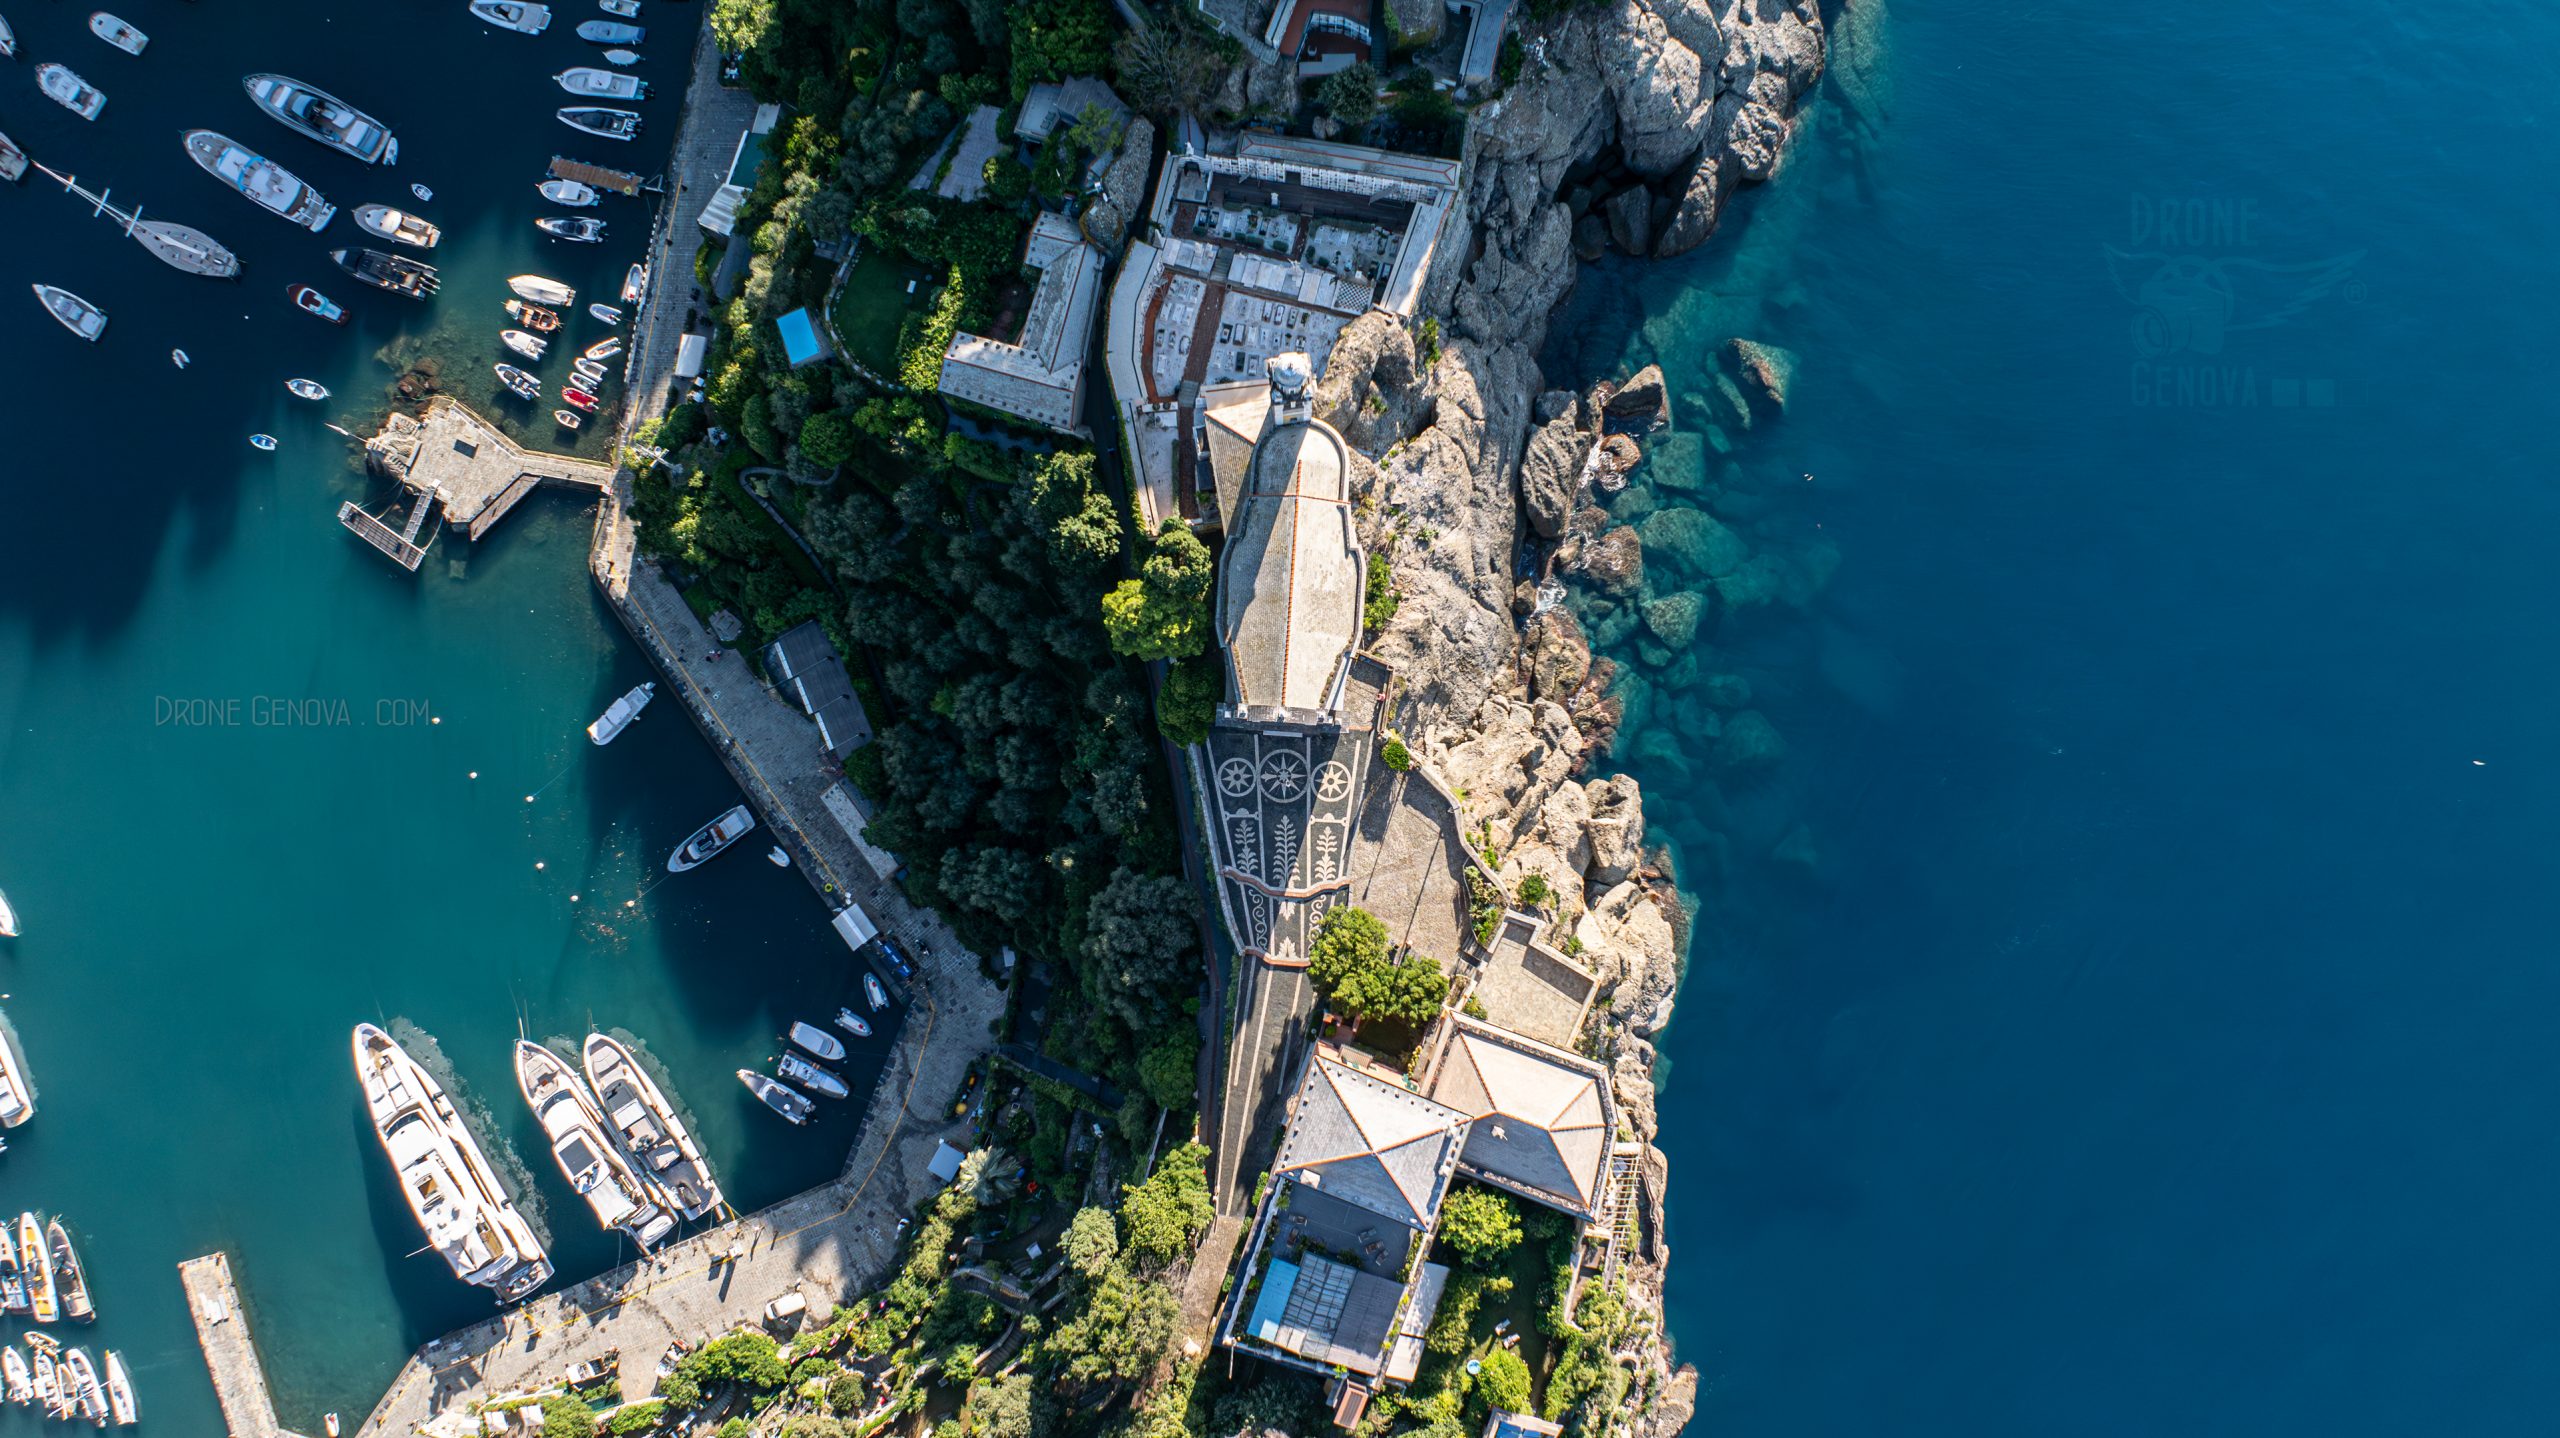 Portofino, foto aerea di Drone Genova